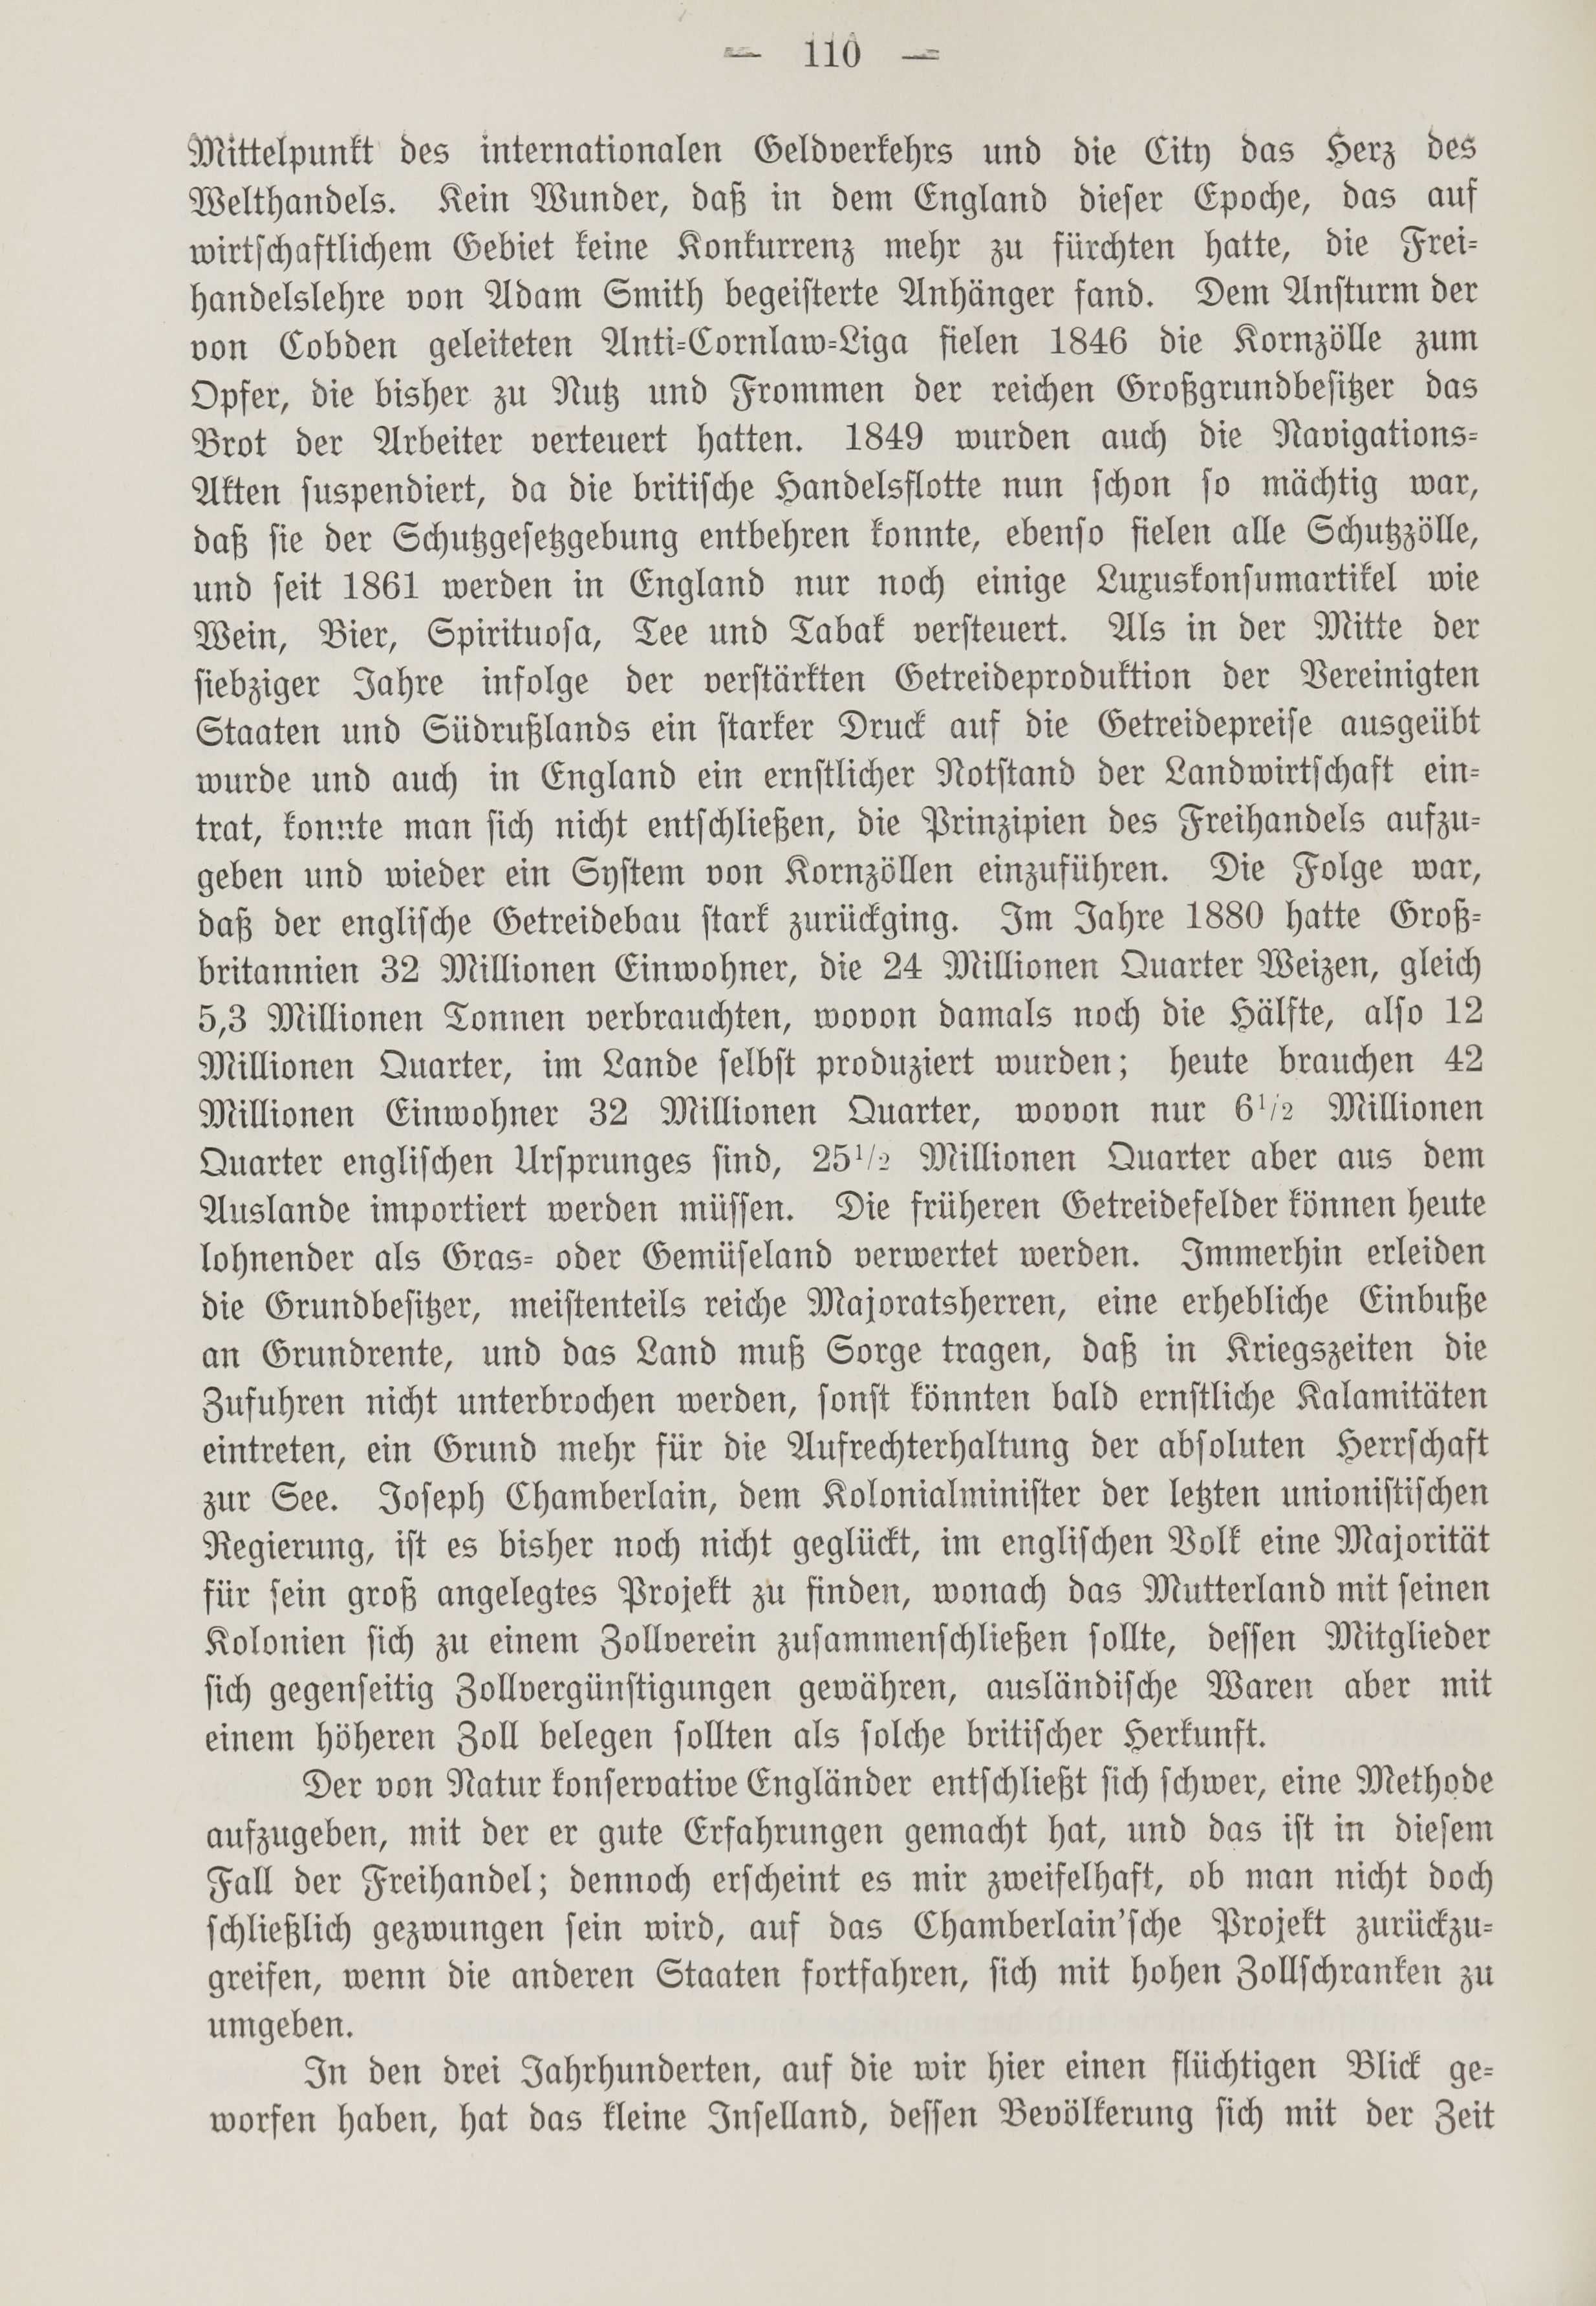 Deutsche Monatsschrift für Russland [1] (1912) | 118. (110) Main body of text